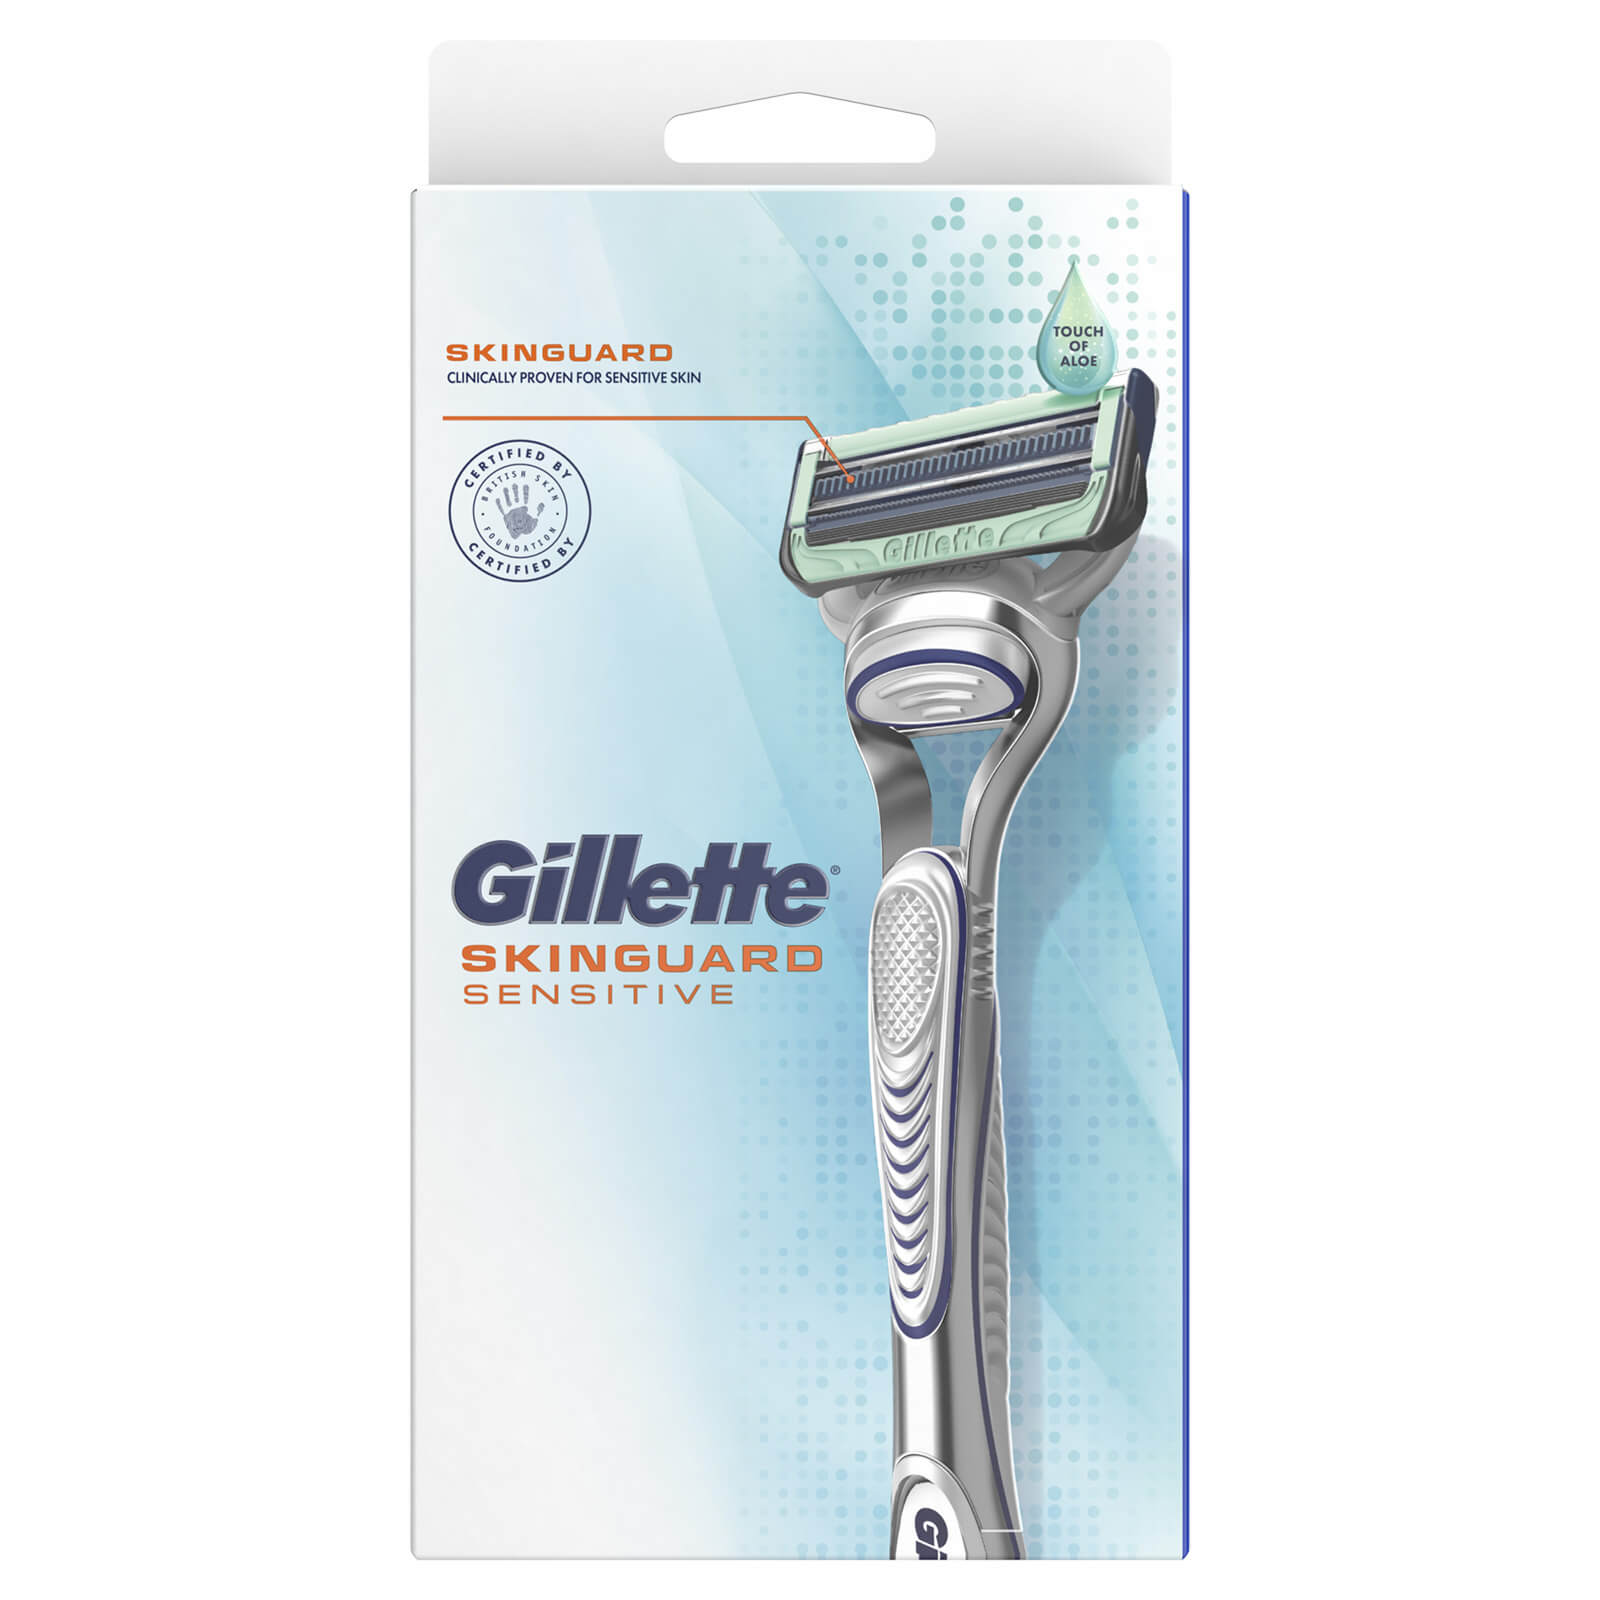 Gillette SkinGuard Sensitive Razor - Razor Only